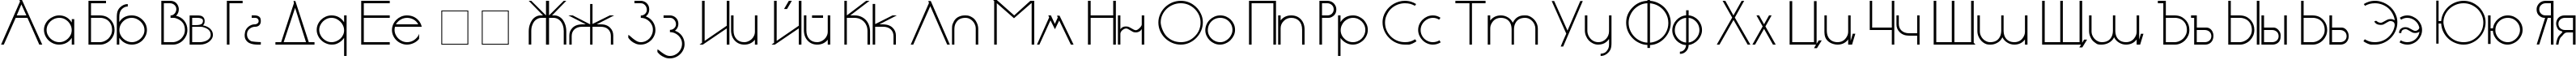 Пример написания русского алфавита шрифтом cyr_DS Standart